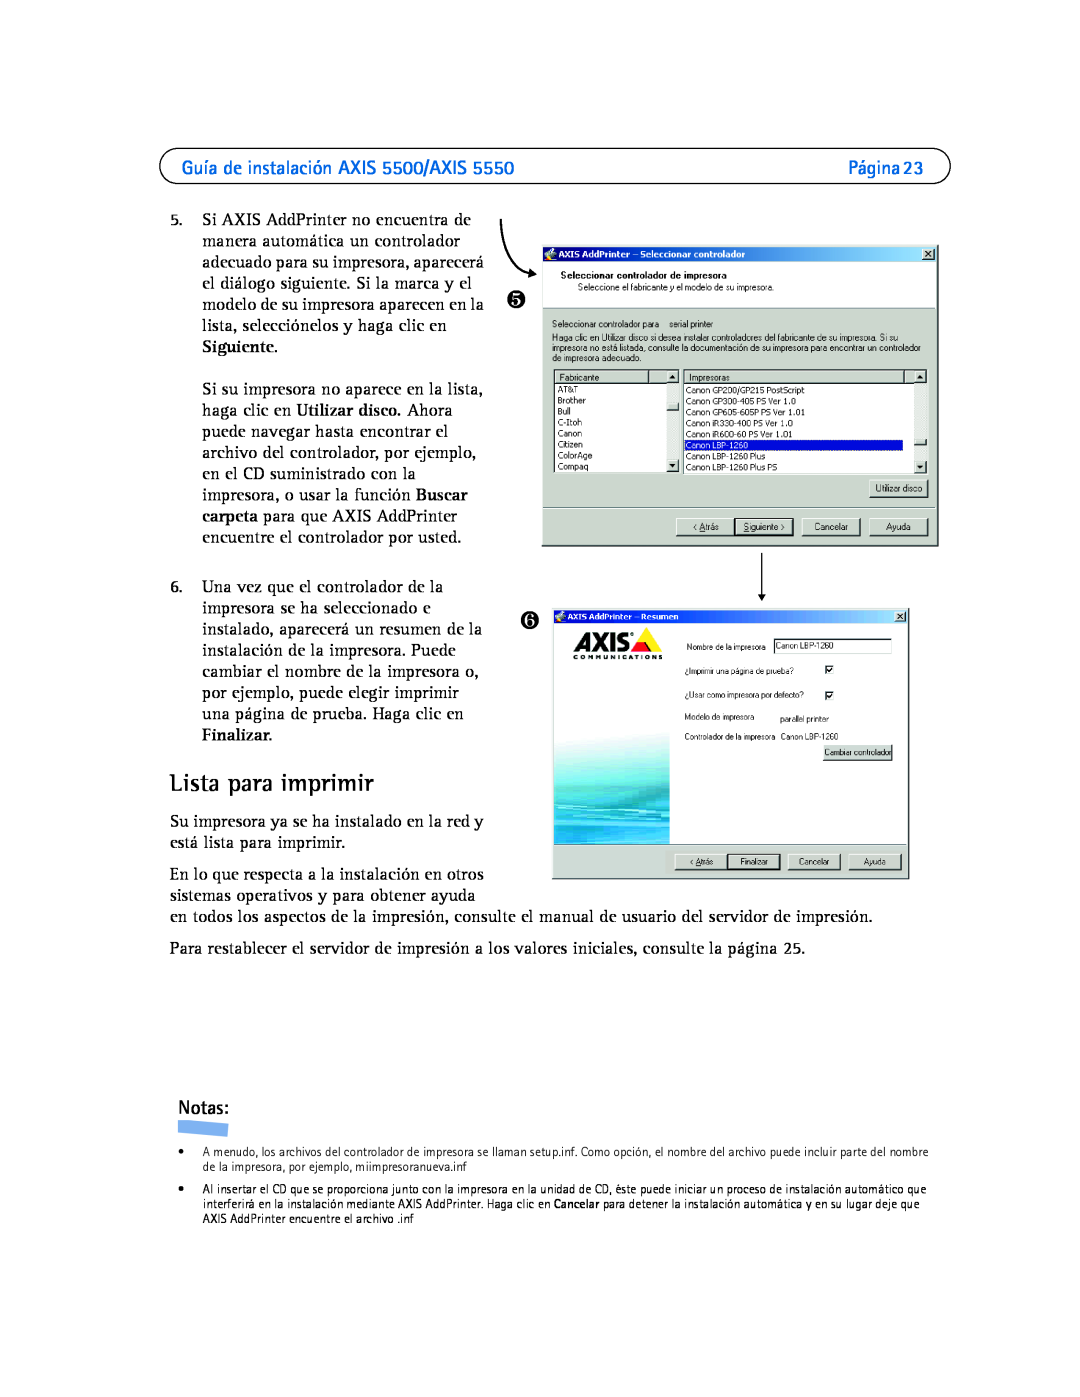 Axis Communications AXIS 5550 manual Lista para imprimir, Guía de instalación AXIS 5500/AXIS, Notas 